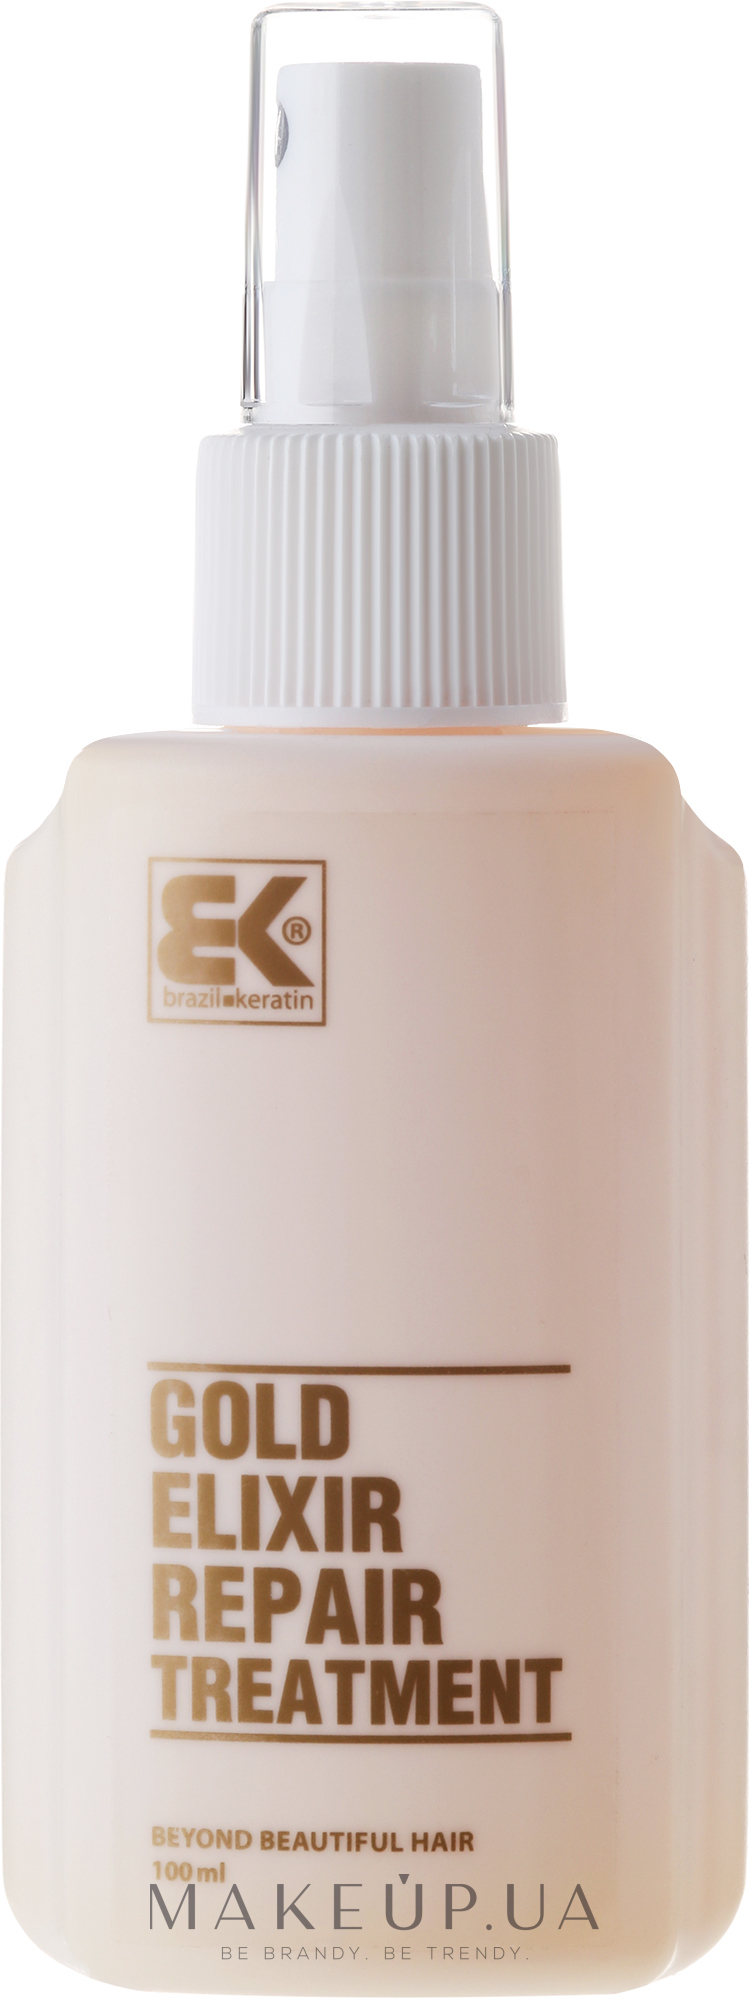 Еліксир для волосся - Brazil Keratin Gold Elixir Repair Treatment — фото 100ml